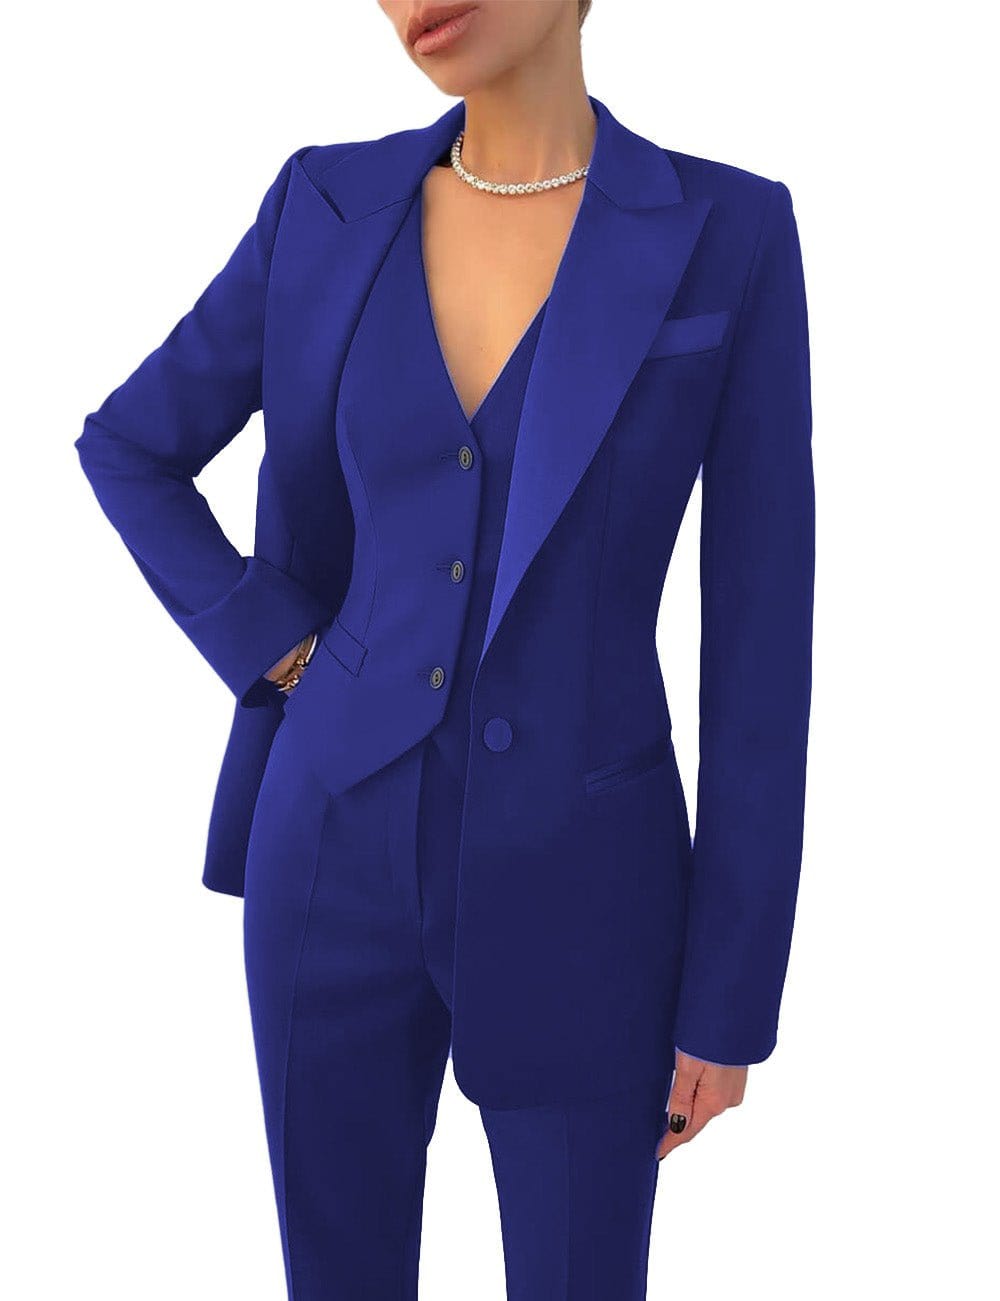 Elegant Royal Blue Women's Business Suit - Customizable Sizes